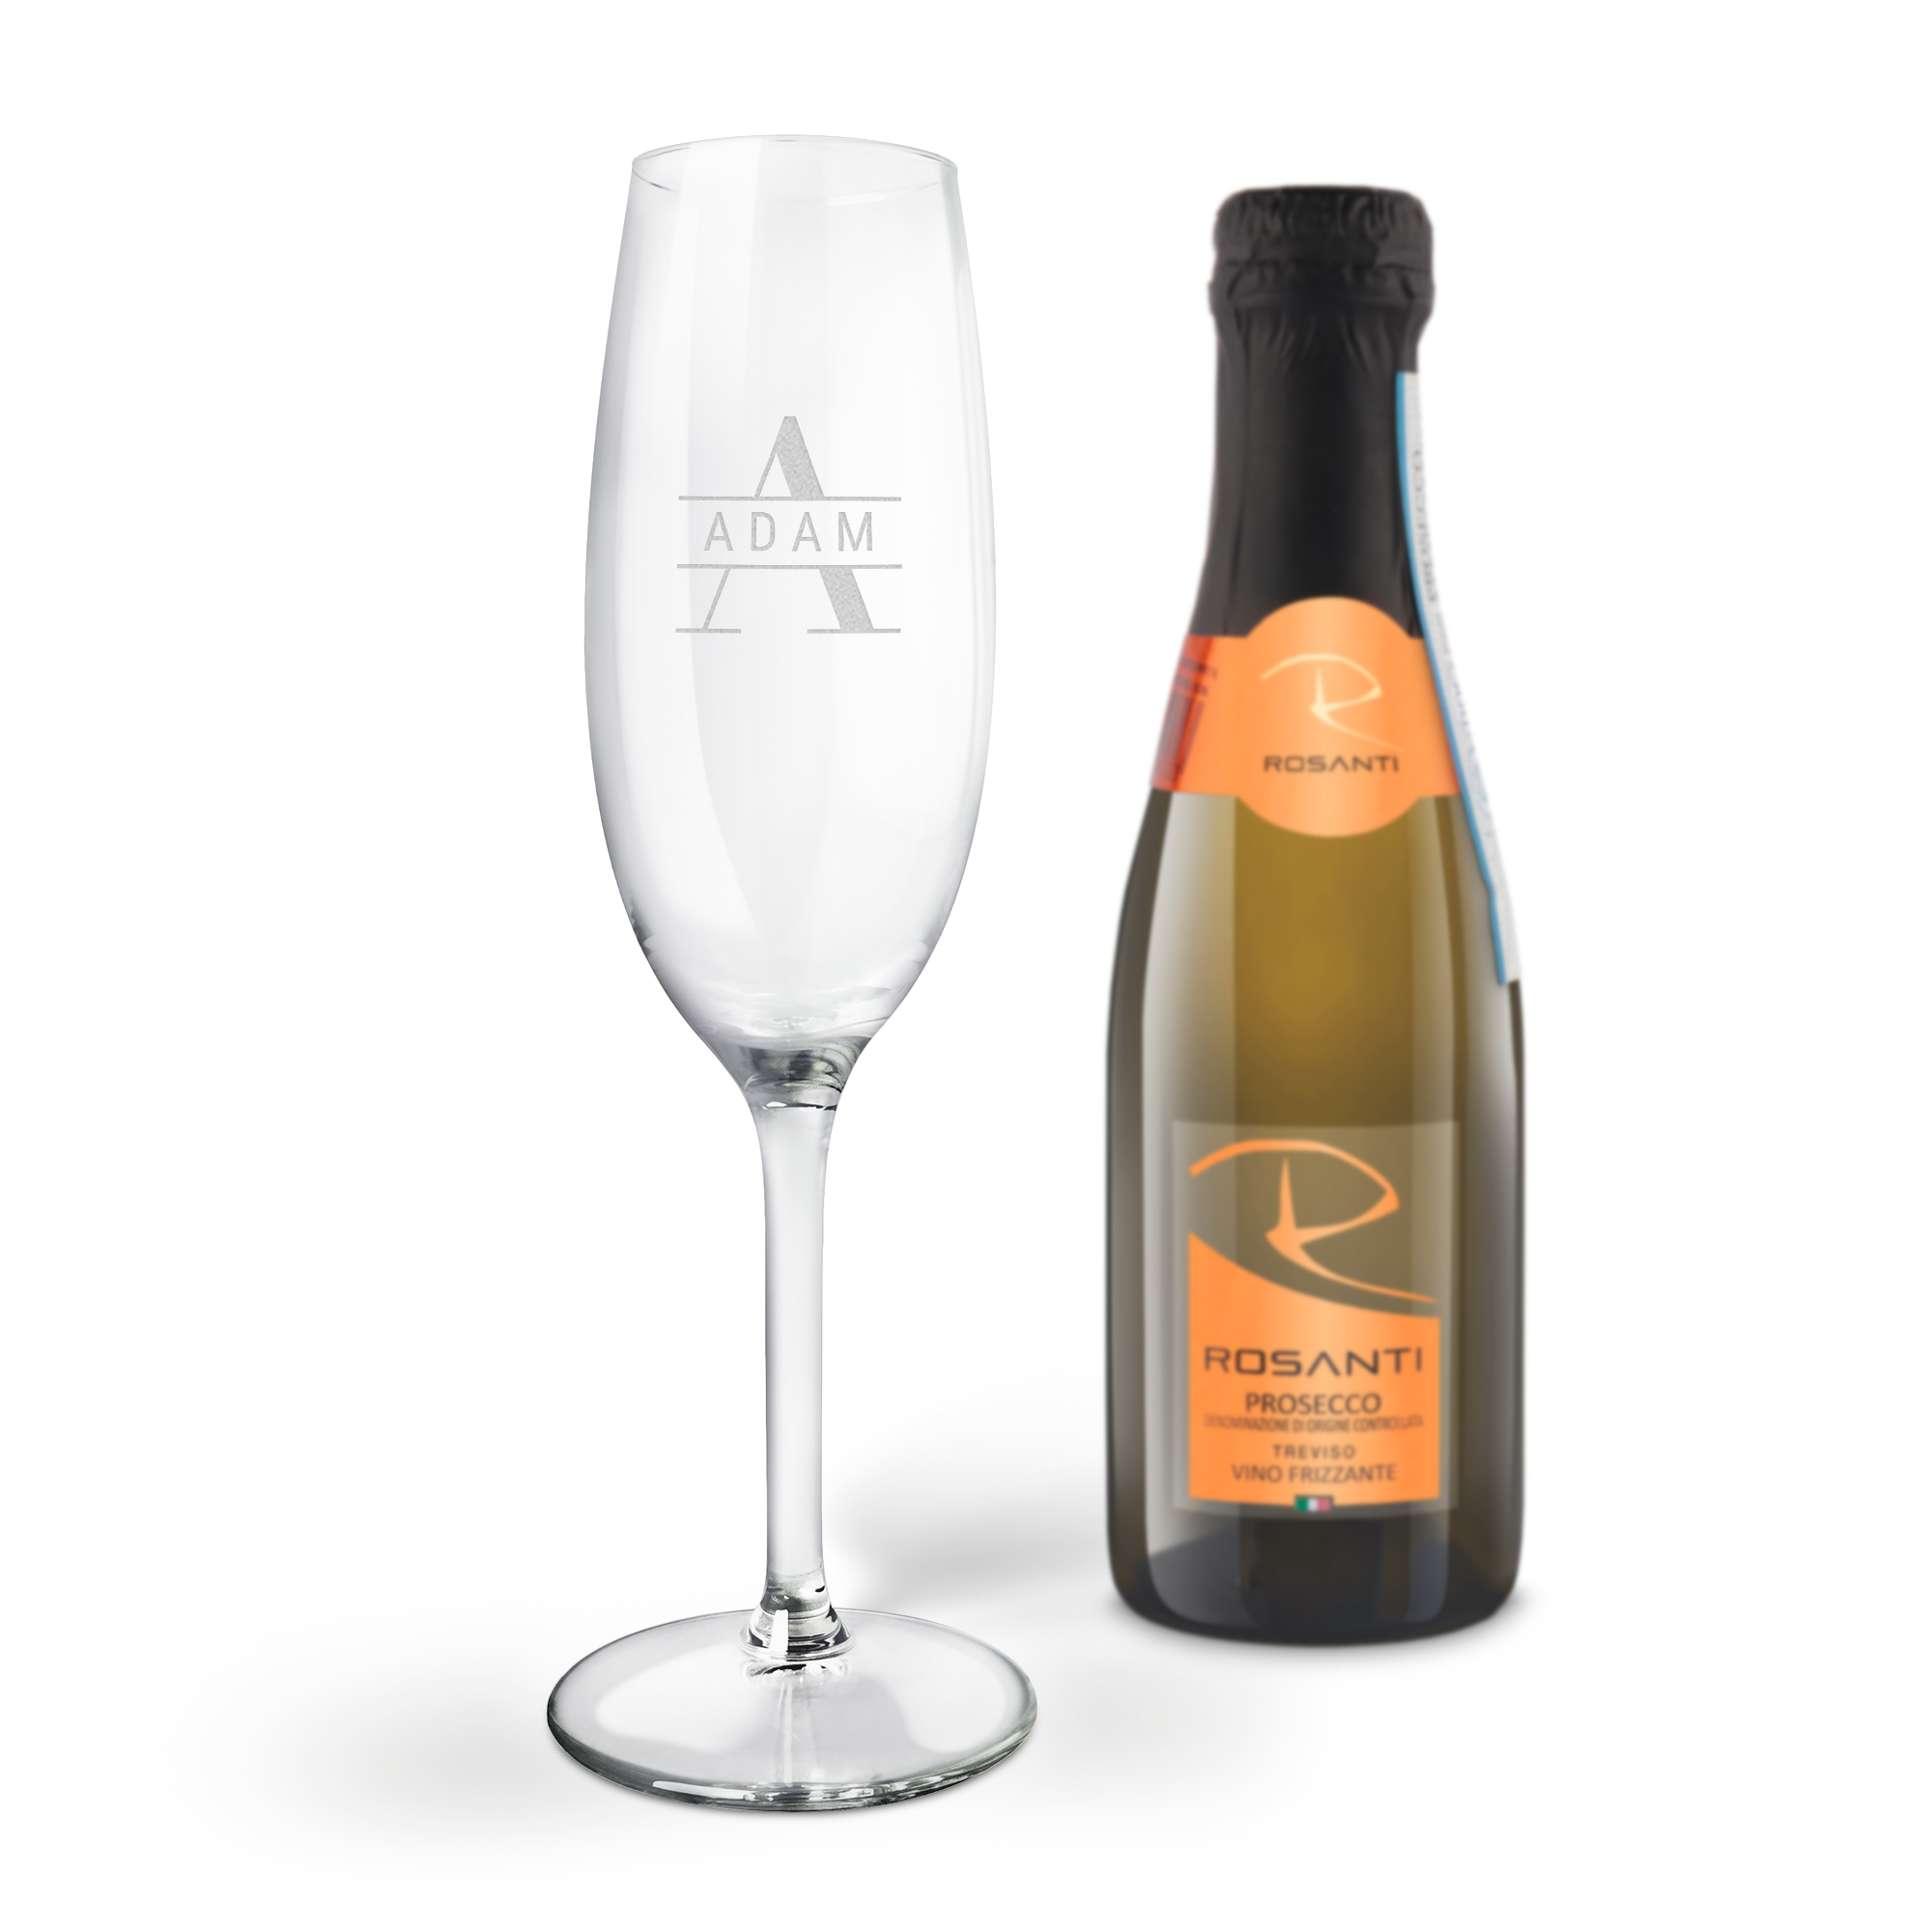 Botella de Prosecco mini con copa personalizada - Rosanti - Vino Frizzante 